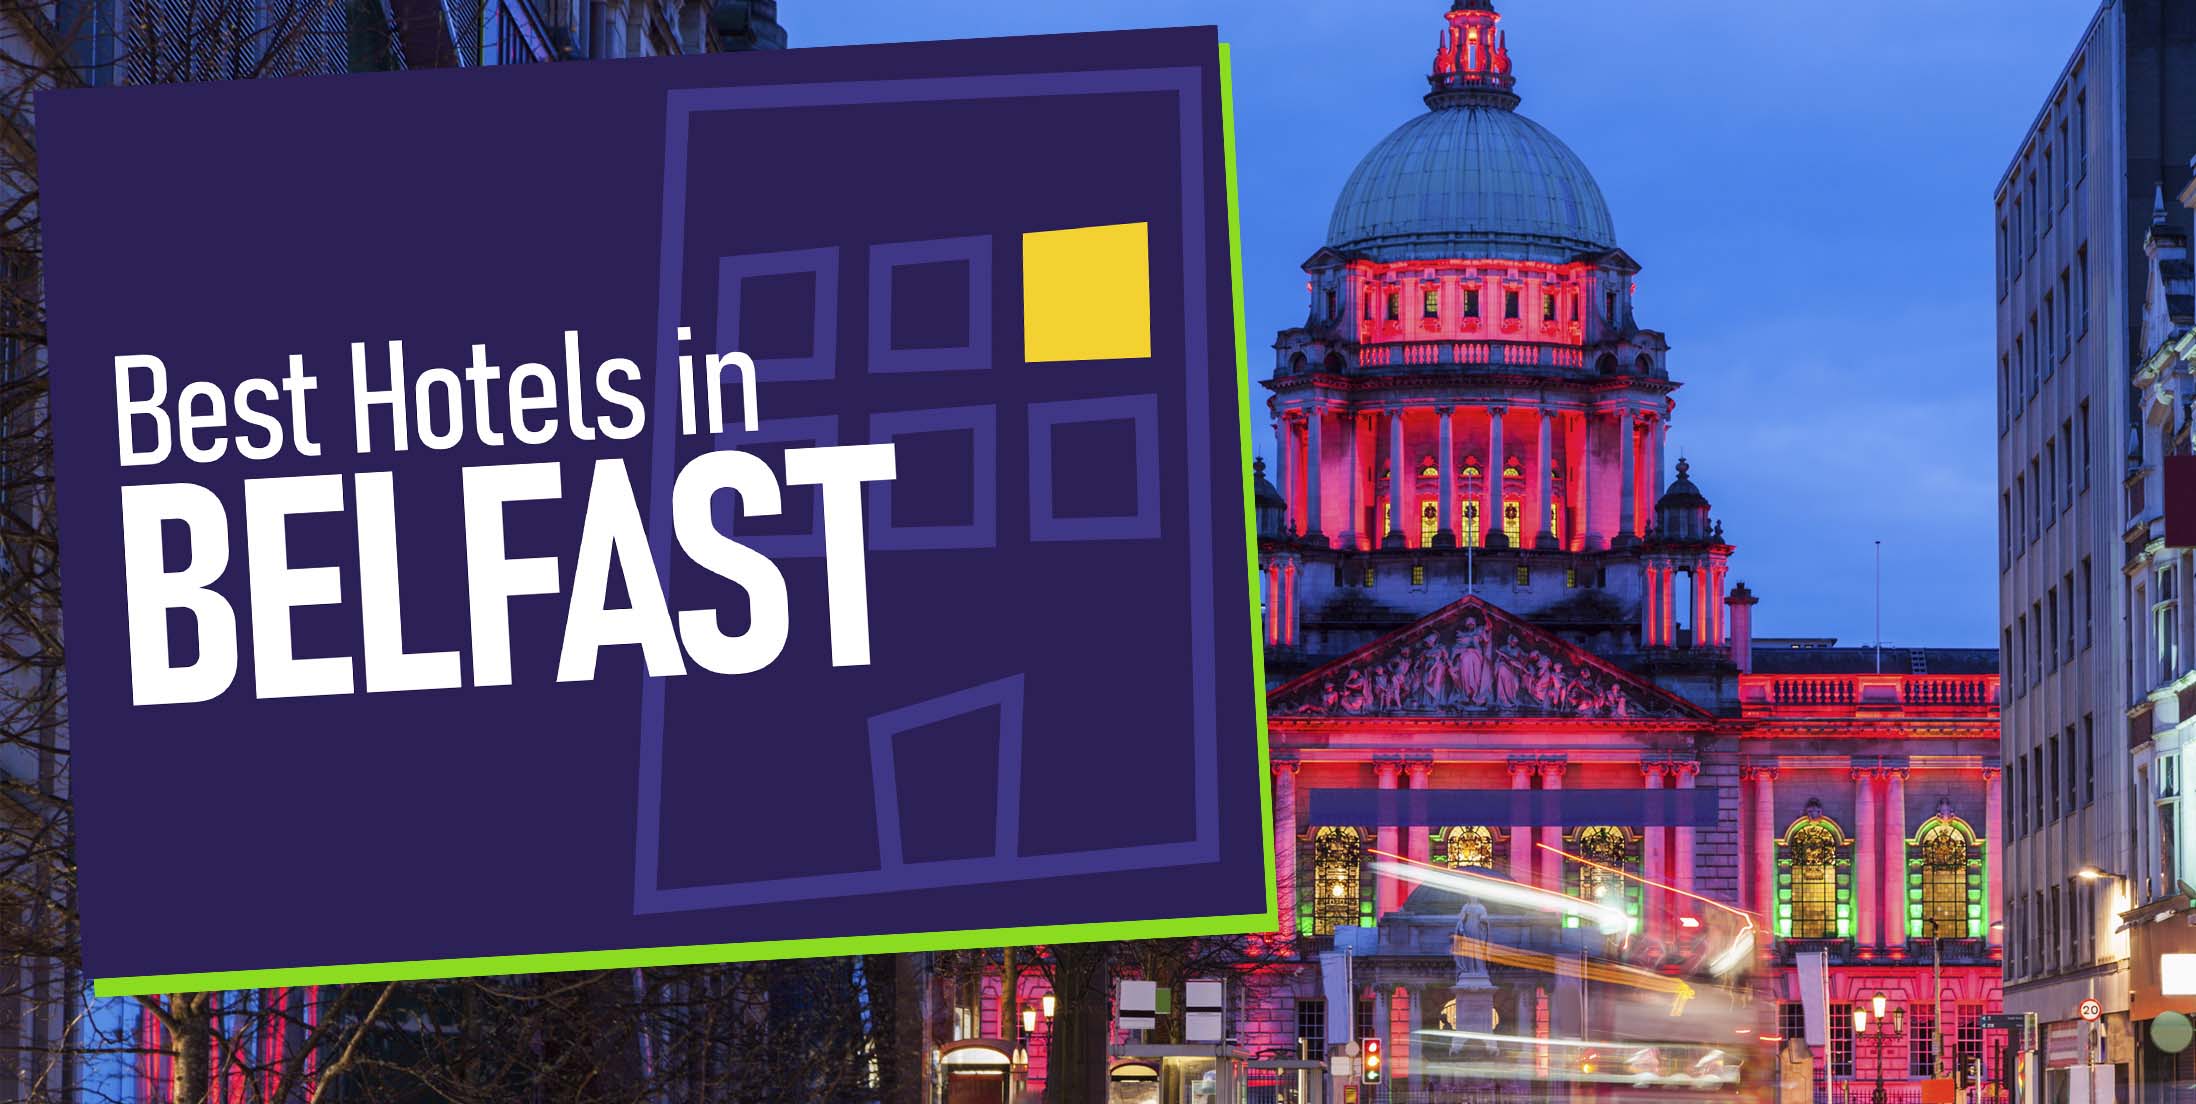 Best Hotels in Belfast